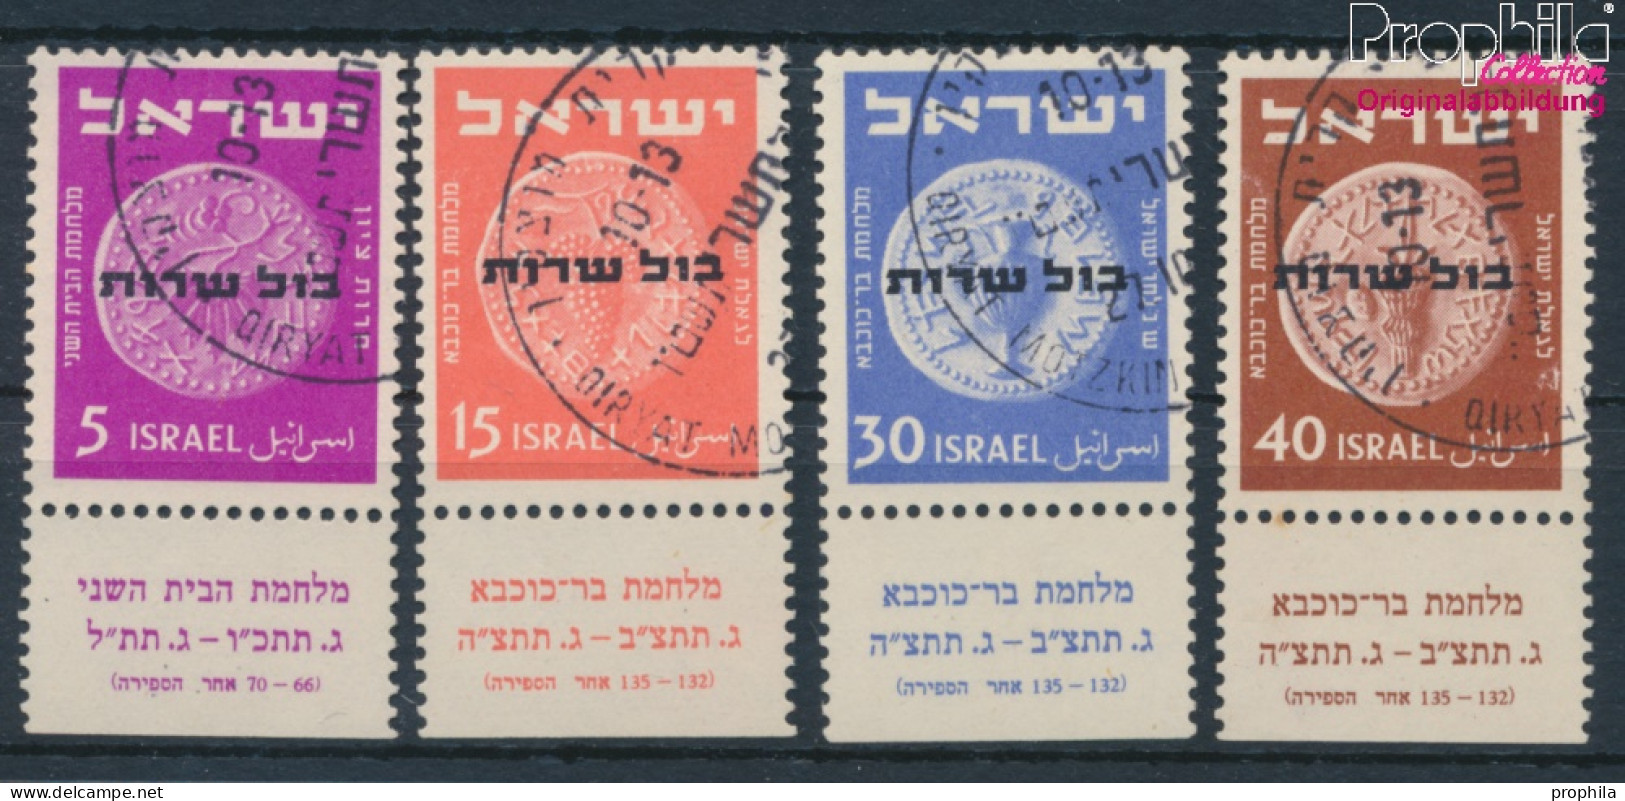 Israel D1-D4 Mit Tab (kompl.Ausg.) Gestempelt 1951 Alte Münzen (10256587 - Gebruikt (met Tabs)